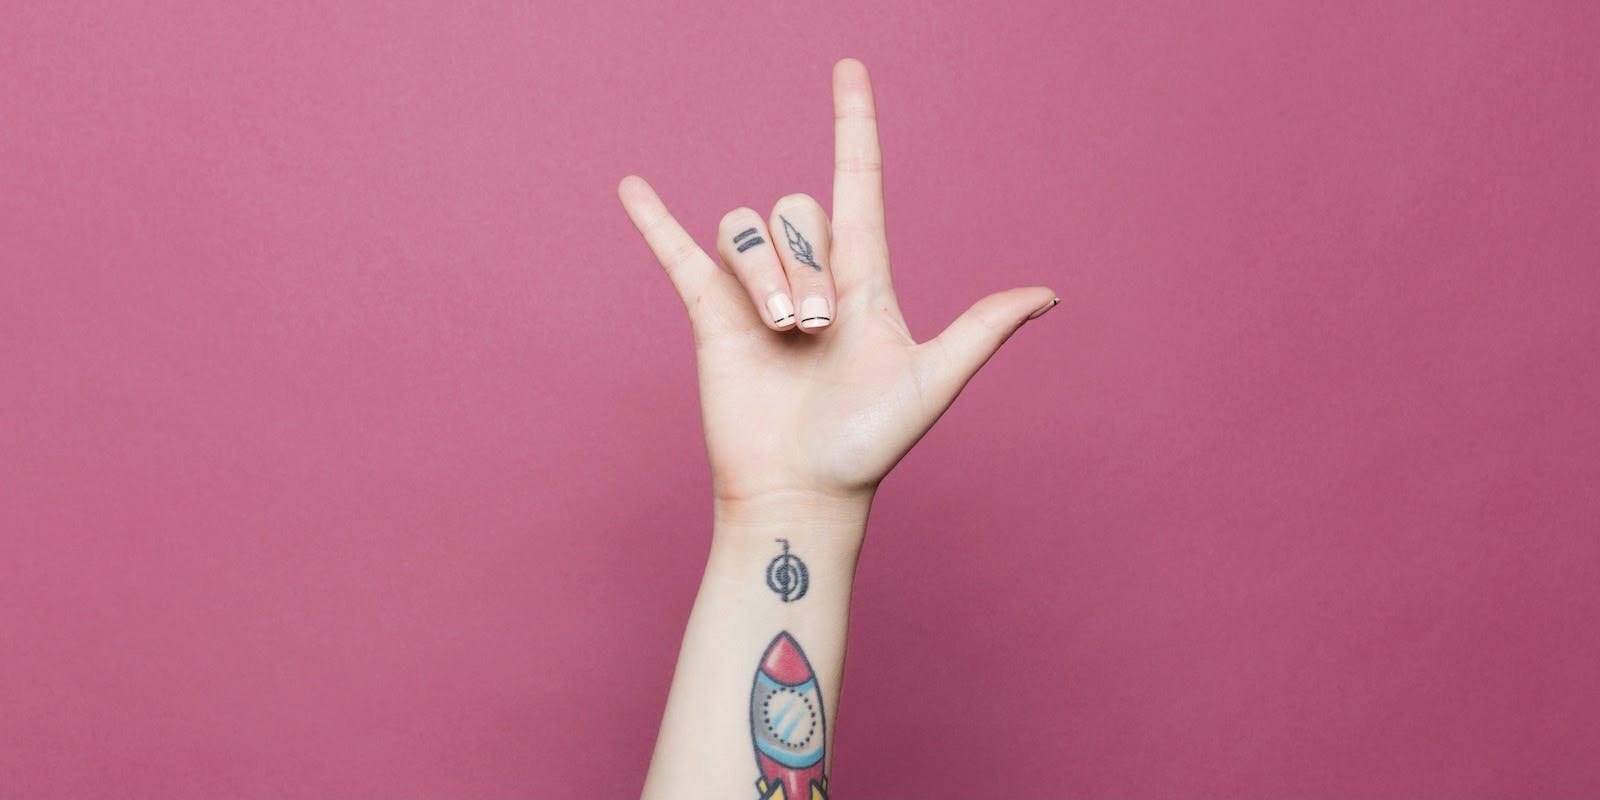 Un antebrazo tatuado se extiende sobre un fondo rosa brillante con una mano que deletrea "Te amo" en lengua de signos.